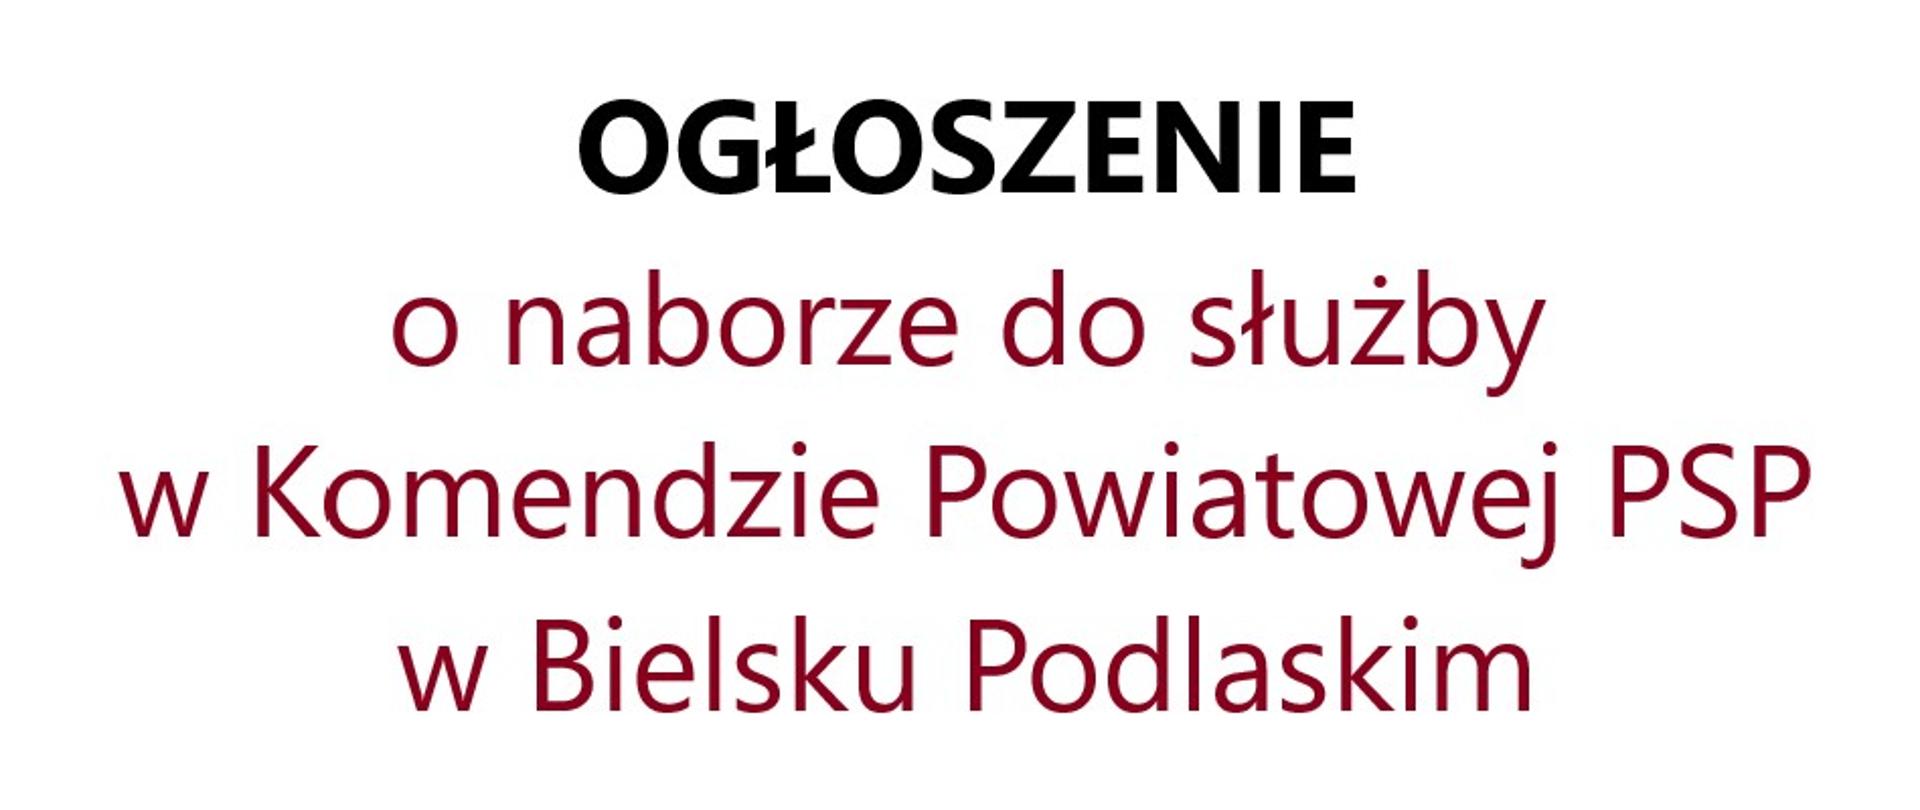 Tekst na białym tle: Ogłoszenie o naborze do służby w Komendzie Powiatowej PSP w Bielsku Podlaskim